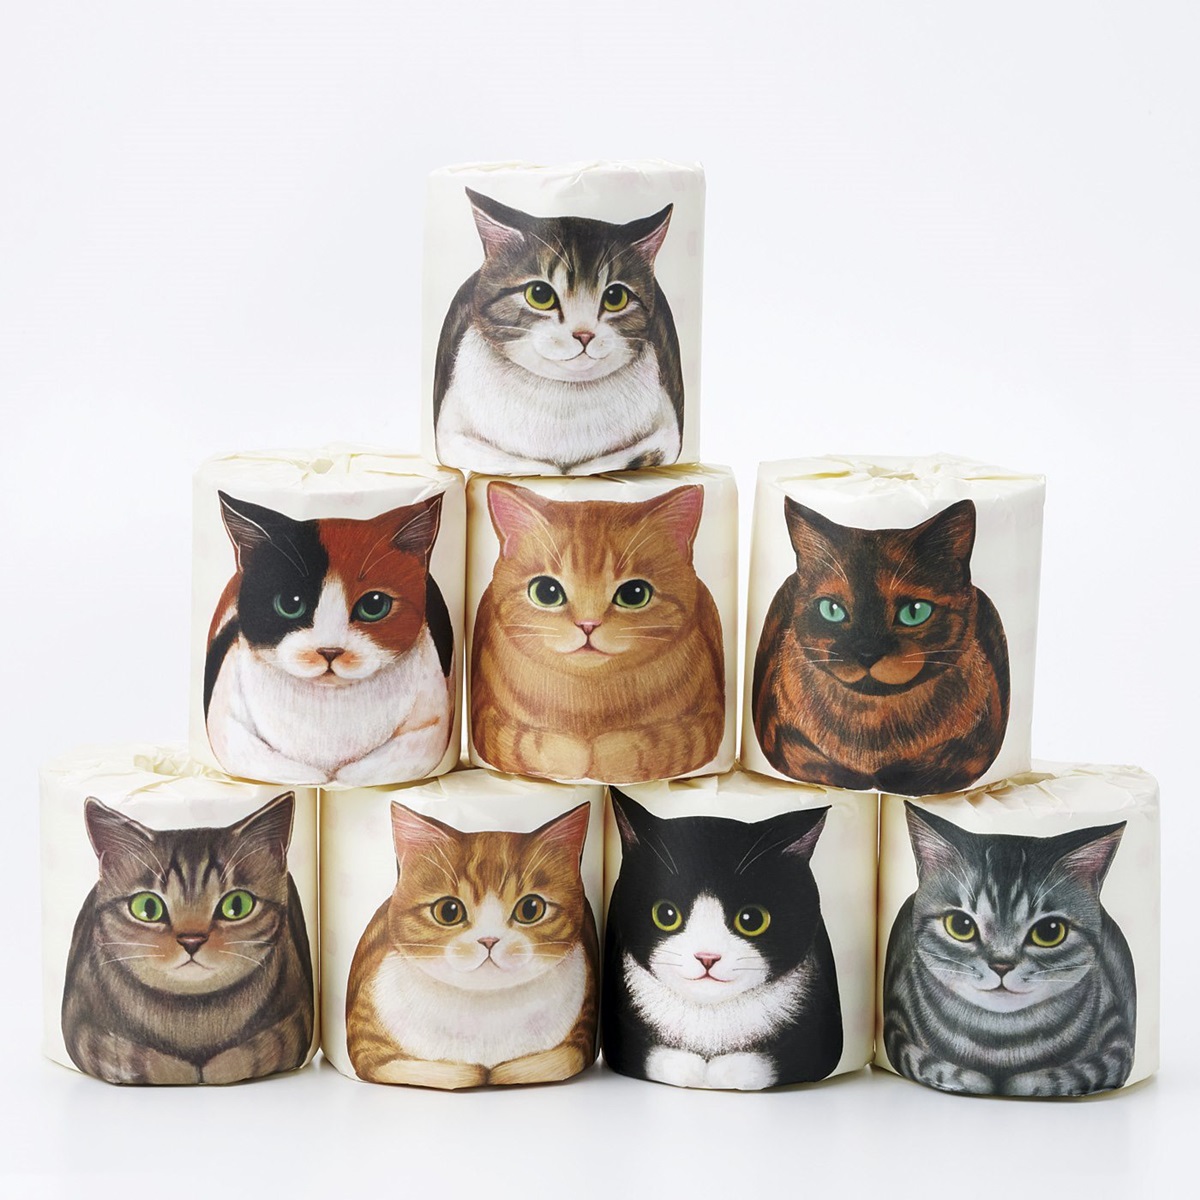 貓舌面紙、貓掌霜用過嗎？超夯日本「貓雜貨」登台5款貓奴必敗品